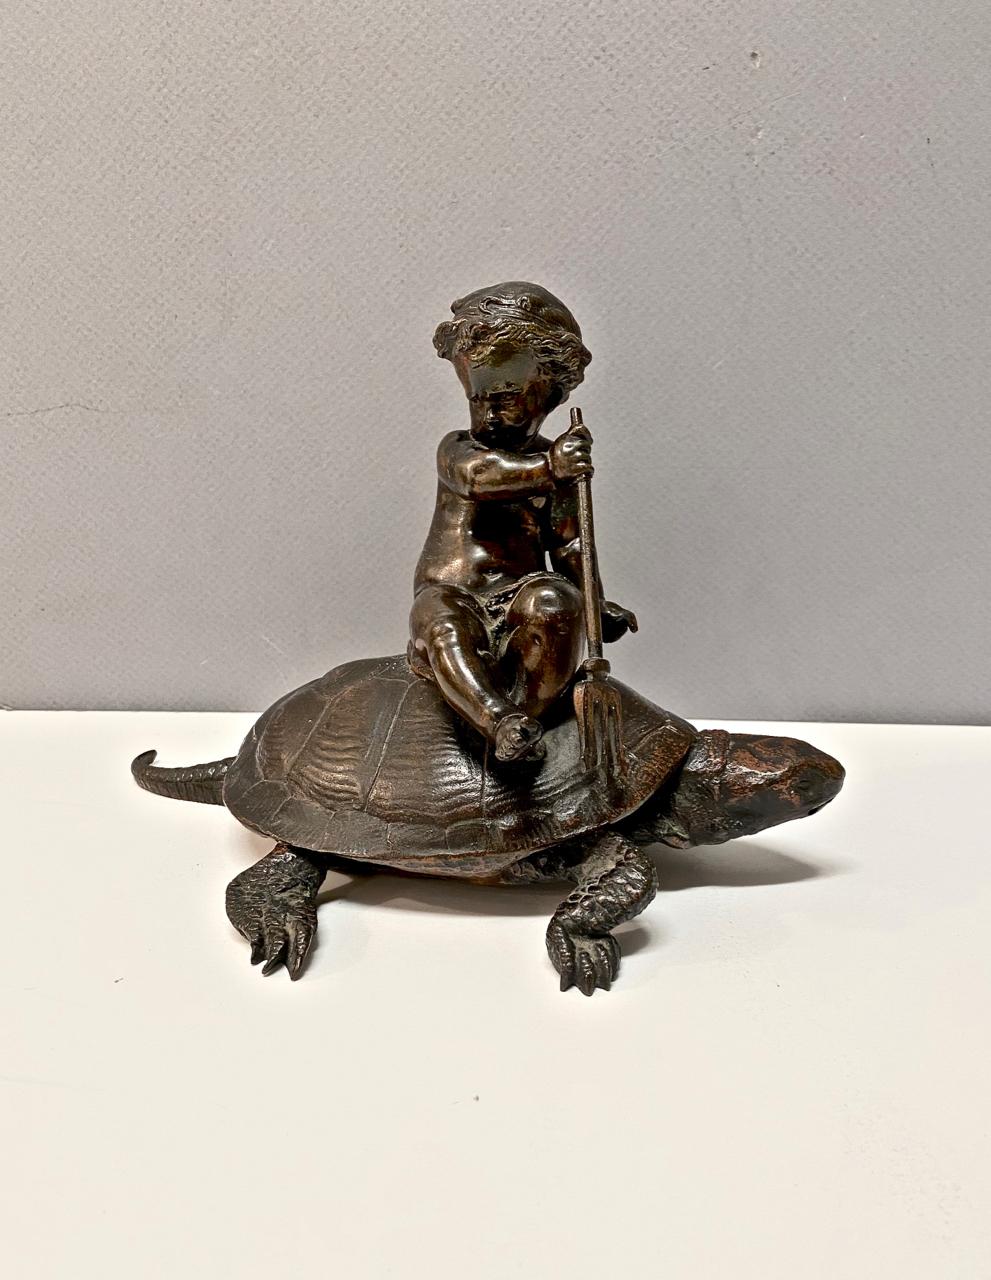 Il s'agit d'une charmante sculpture figurative représentant une Putti avec un trident chevauchant une tortue. Pour les Grecs et les Romains de l'Antiquité, la tortue était un symbole d'amour et de fertilité ; elle était considérée comme un attribut